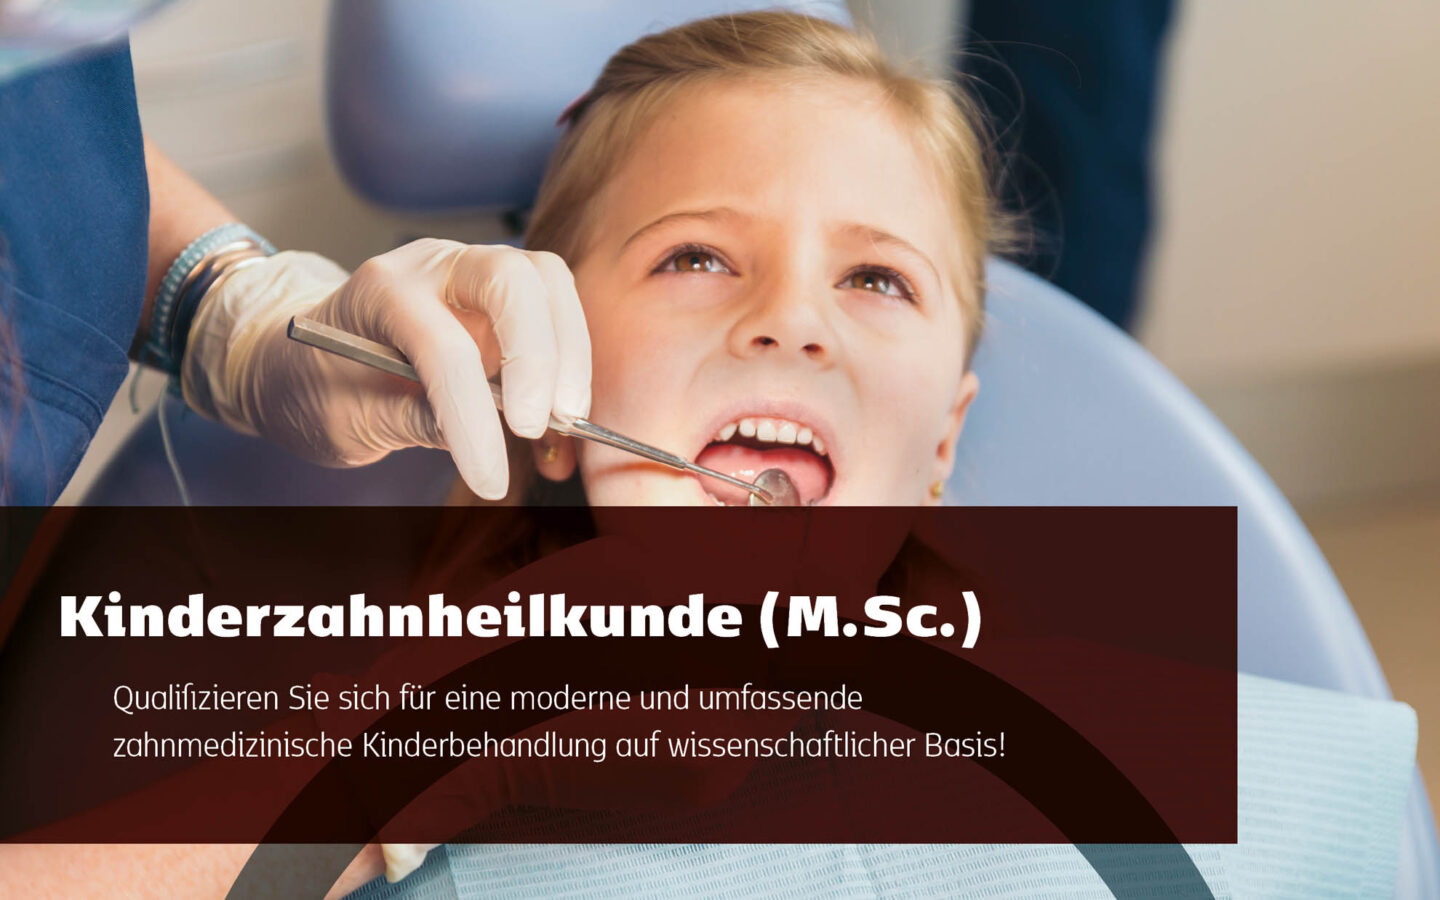 Qualifizieren Sie sich für eine moderne und umfassende zahnmedizinische Kinderbehandlung auf wissenschaftlicher Basis!